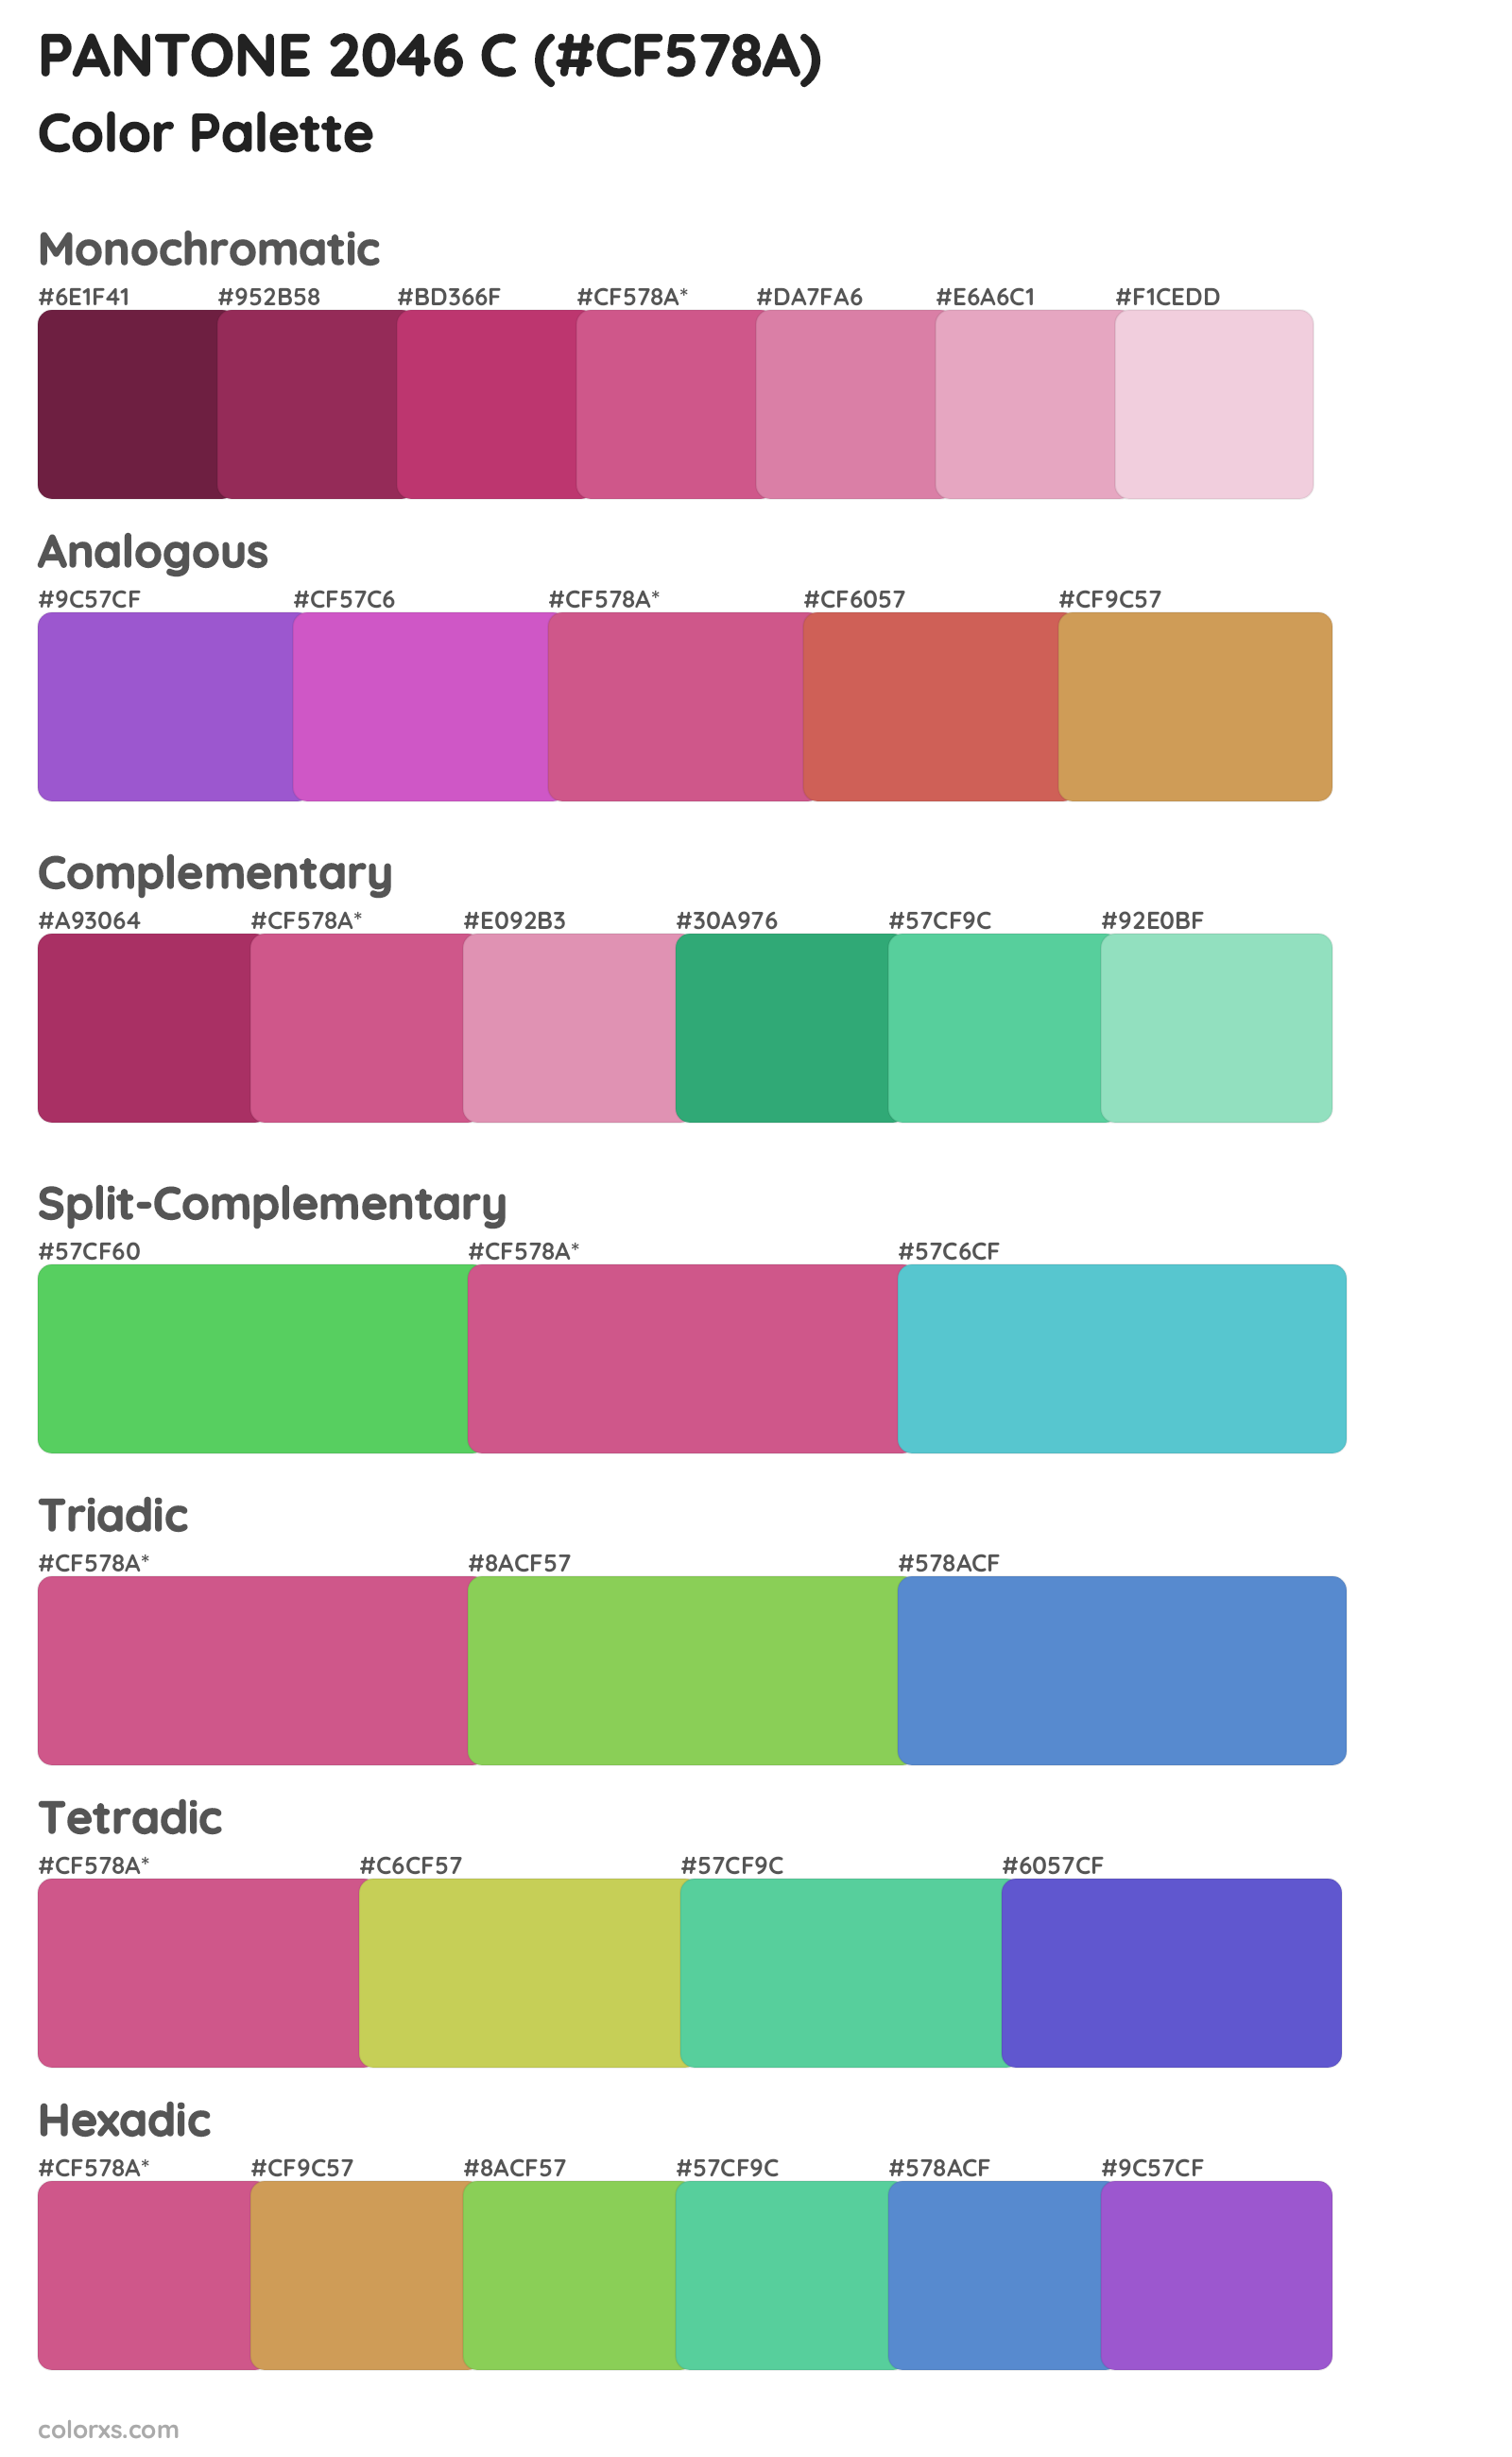 PANTONE 2046 C Color Scheme Palettes